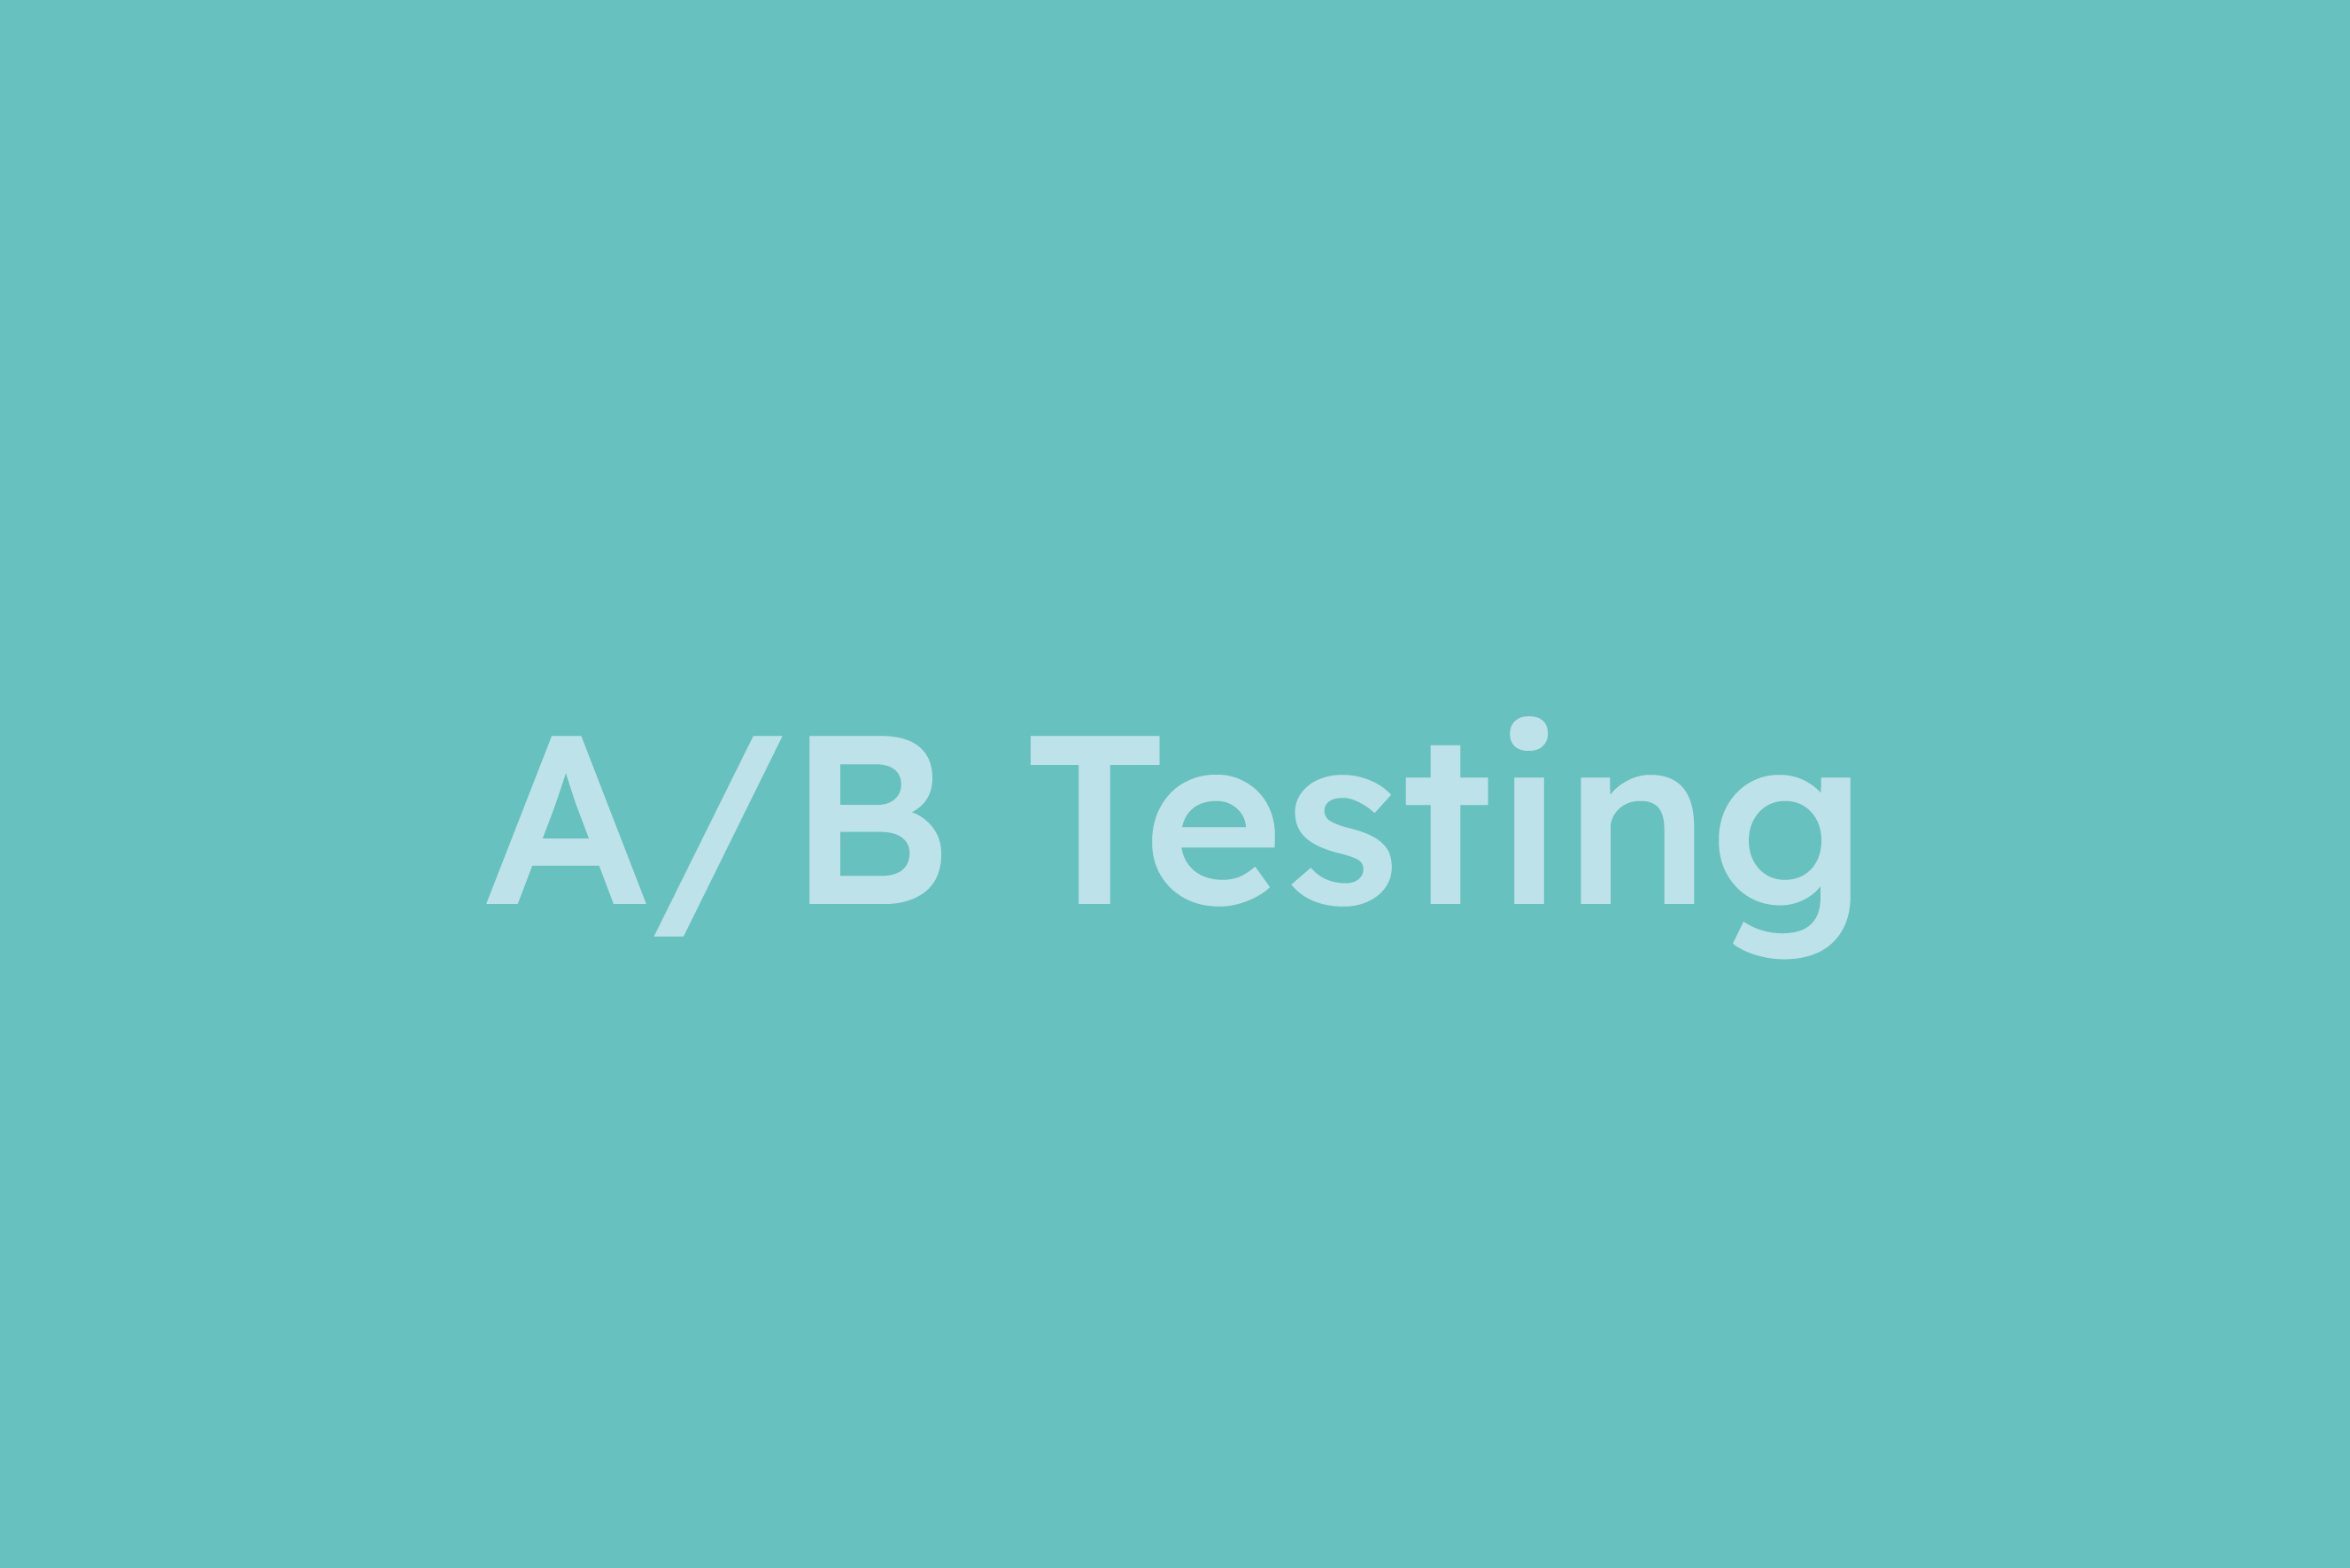 A/B Testing erklärt im Glossar von Campaign